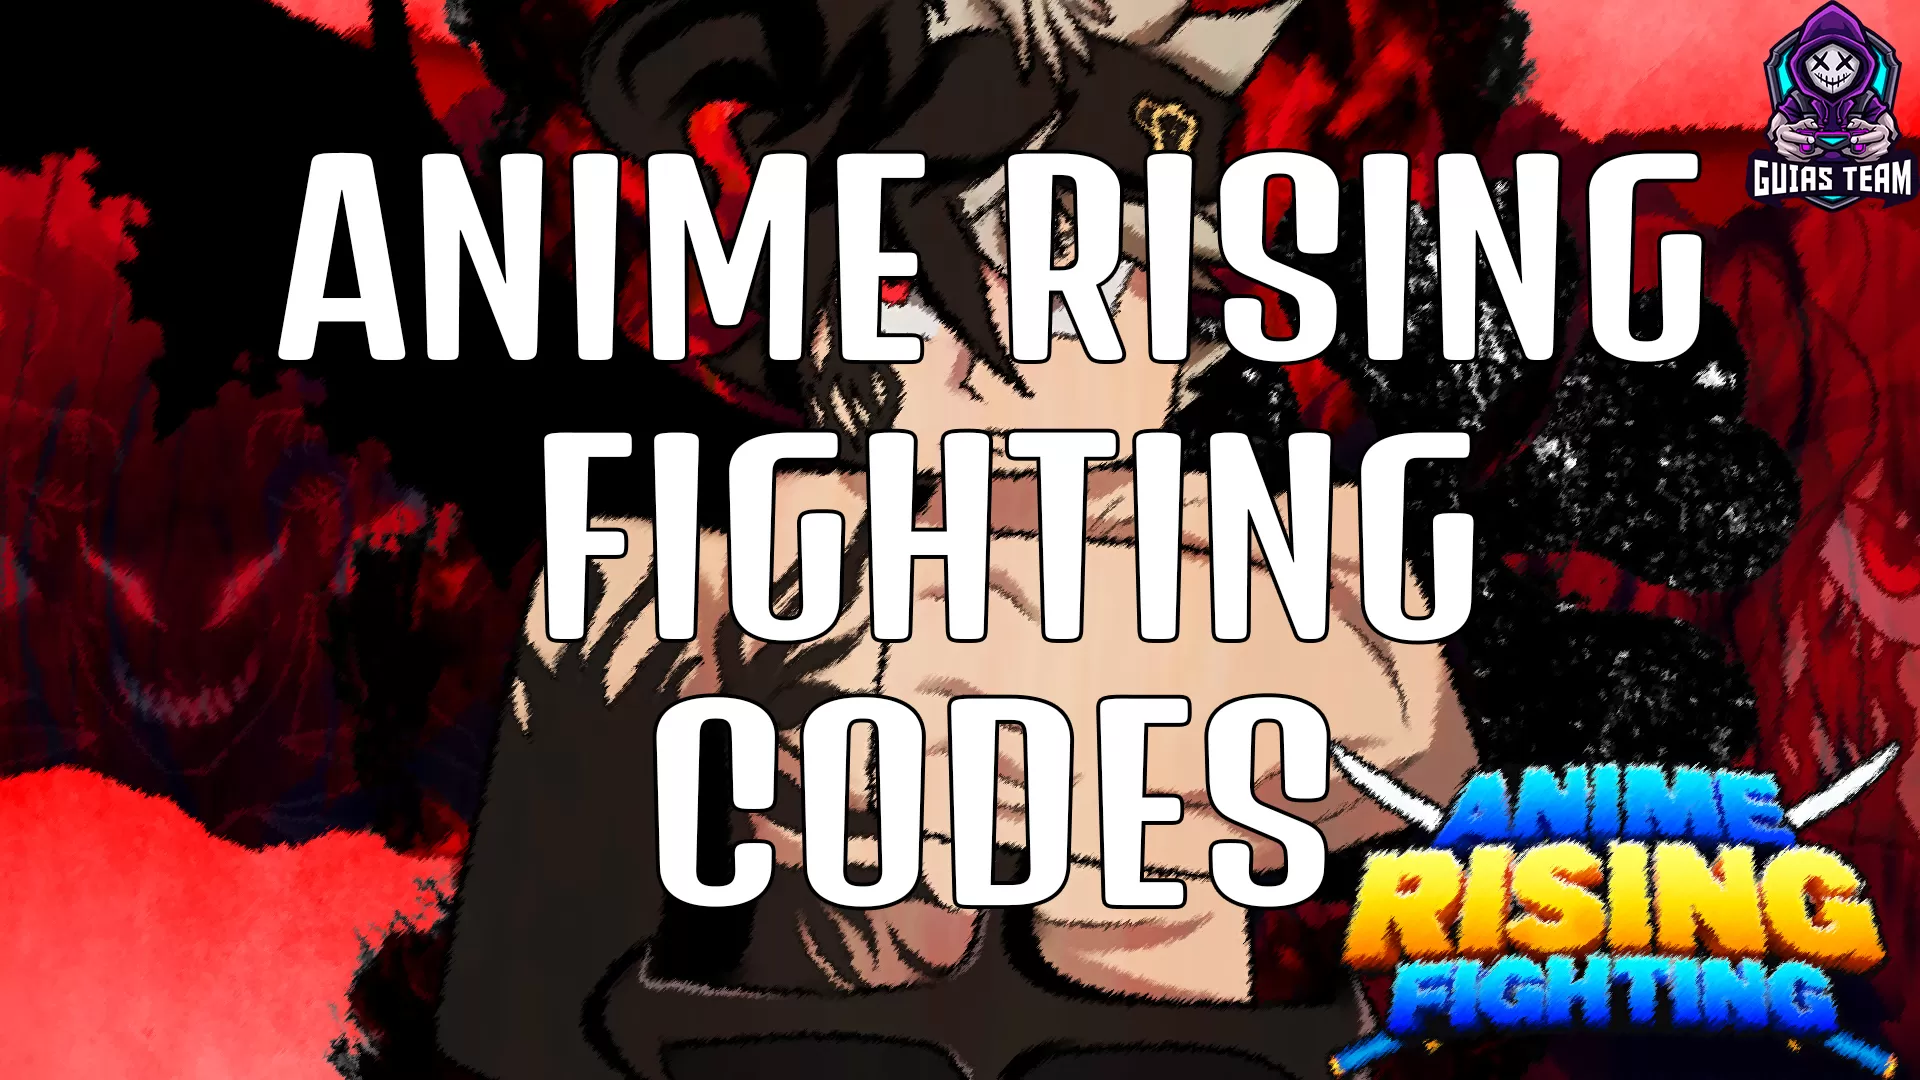 Como jogar Roblox: Anime Fighters Simulator - Guia de Iniciantes